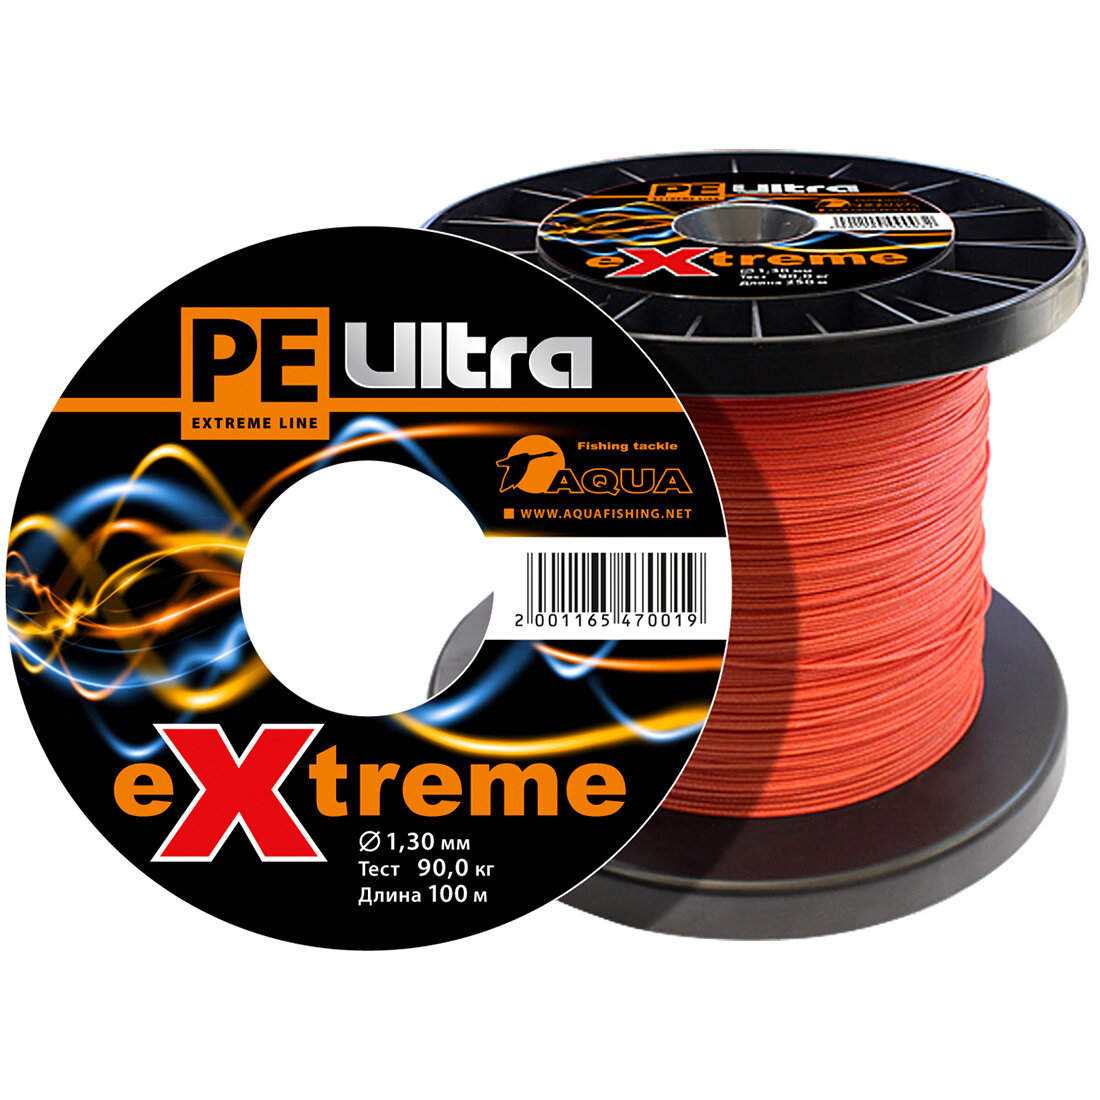 Плетеный шнур для рыбалки AQUA PE ULTRA EXTREME 130mm (цвет красный) 100m